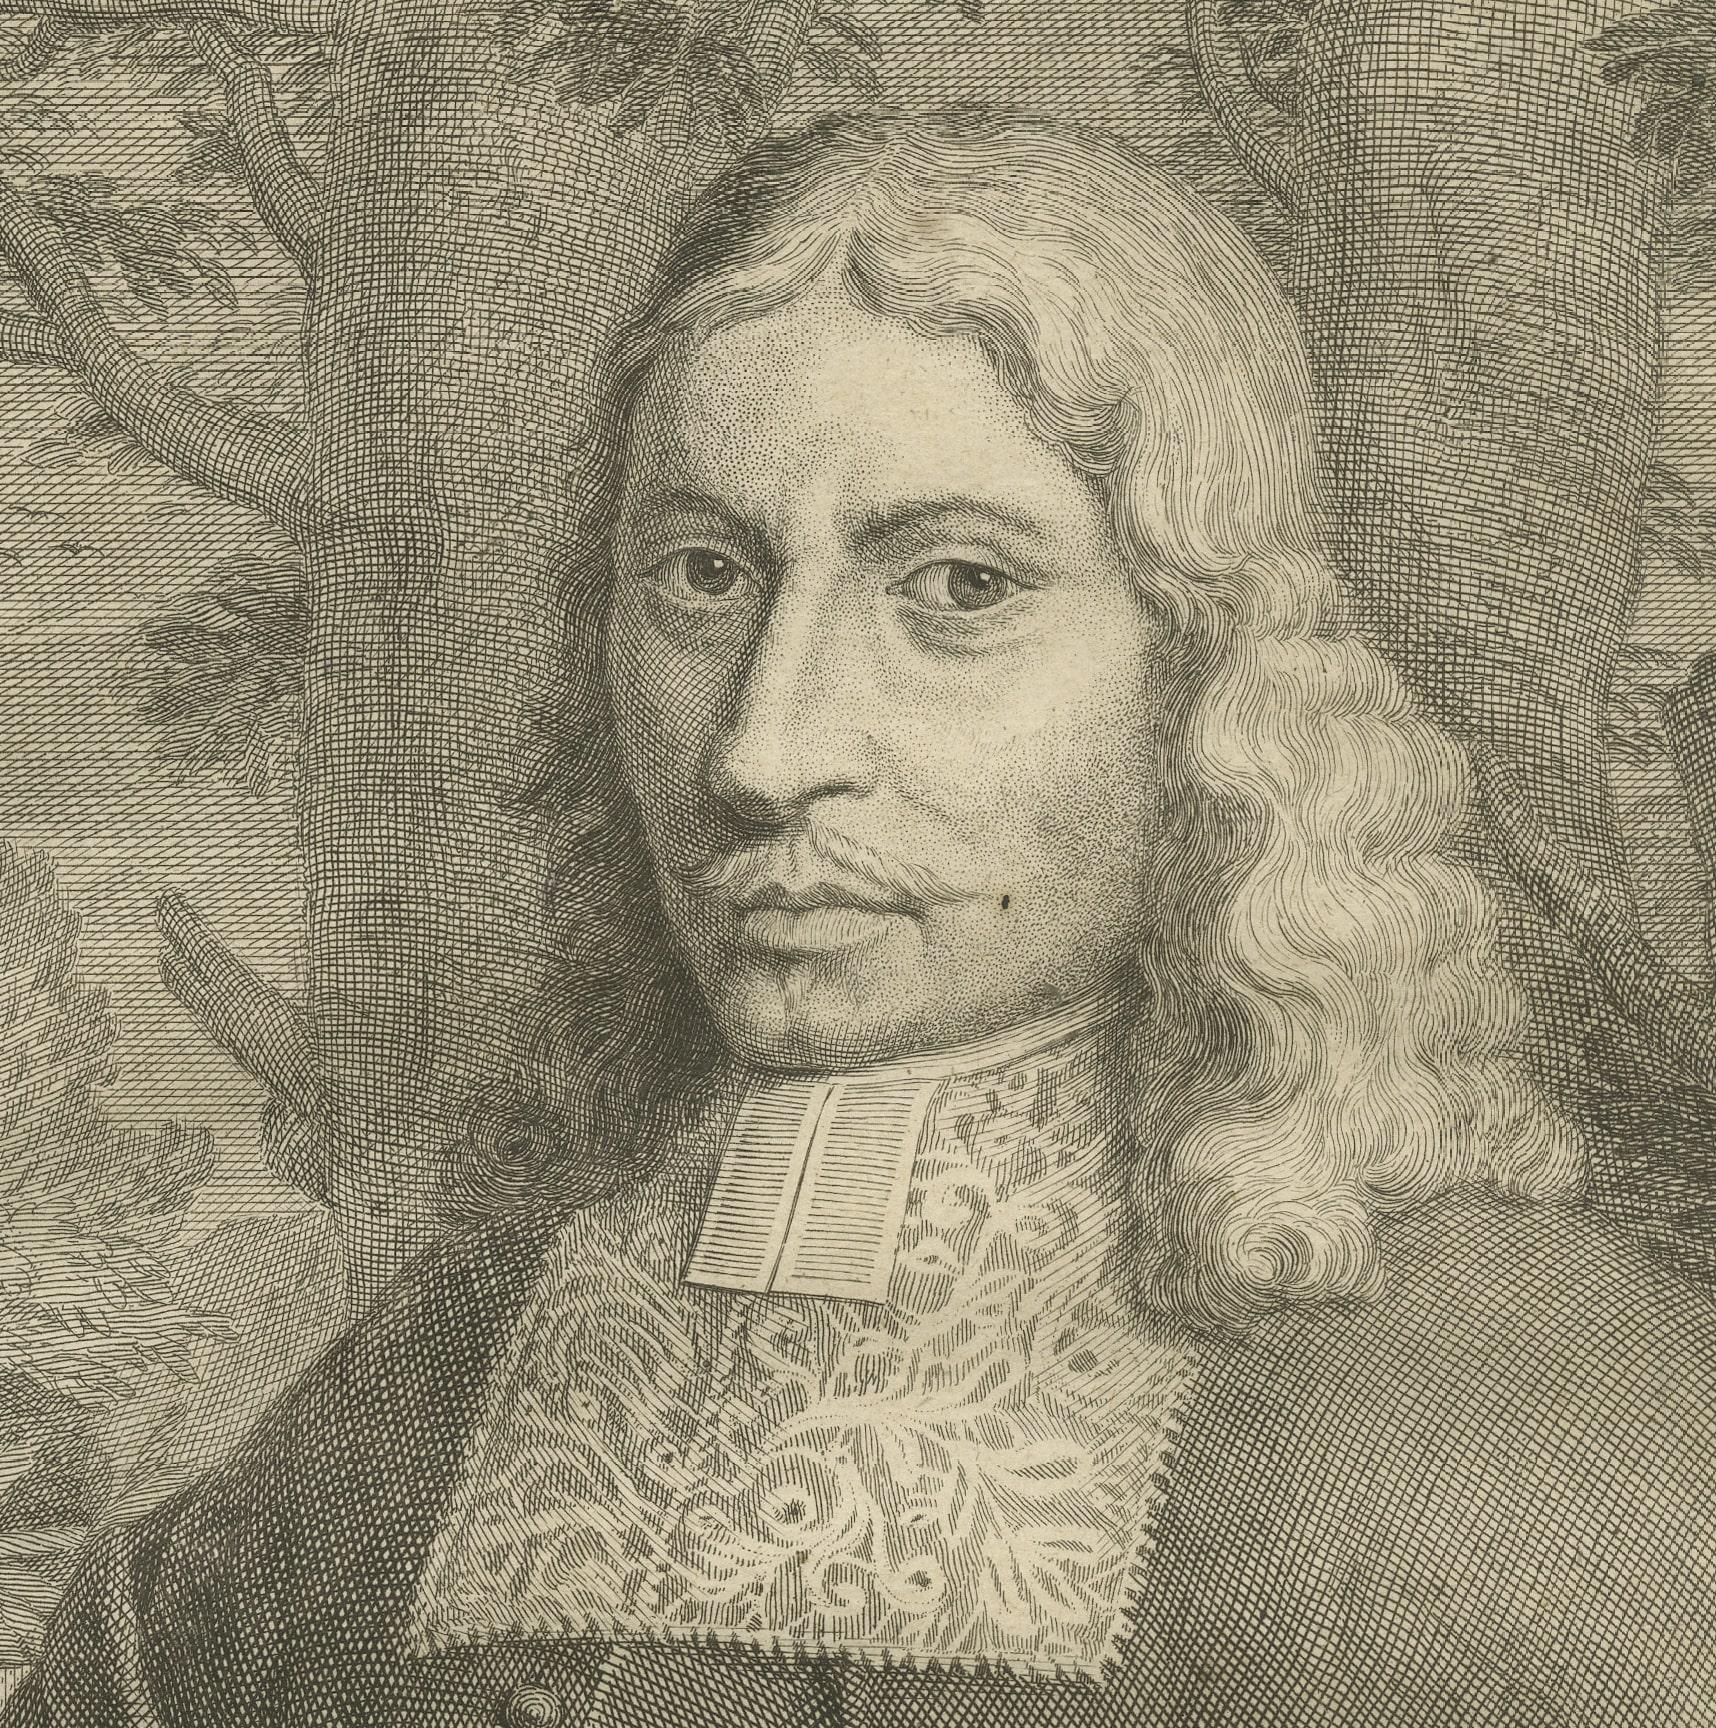 Rycklof van Goens war eine bedeutende Persönlichkeit in der Geschichte der Niederländischen Ostindien-Kompanie (VOC). Van Goens war von 1678 bis 1681 Generalgouverneur in Niederländisch-Ostindien.

Hier ein Überblick über sein Leben und seine